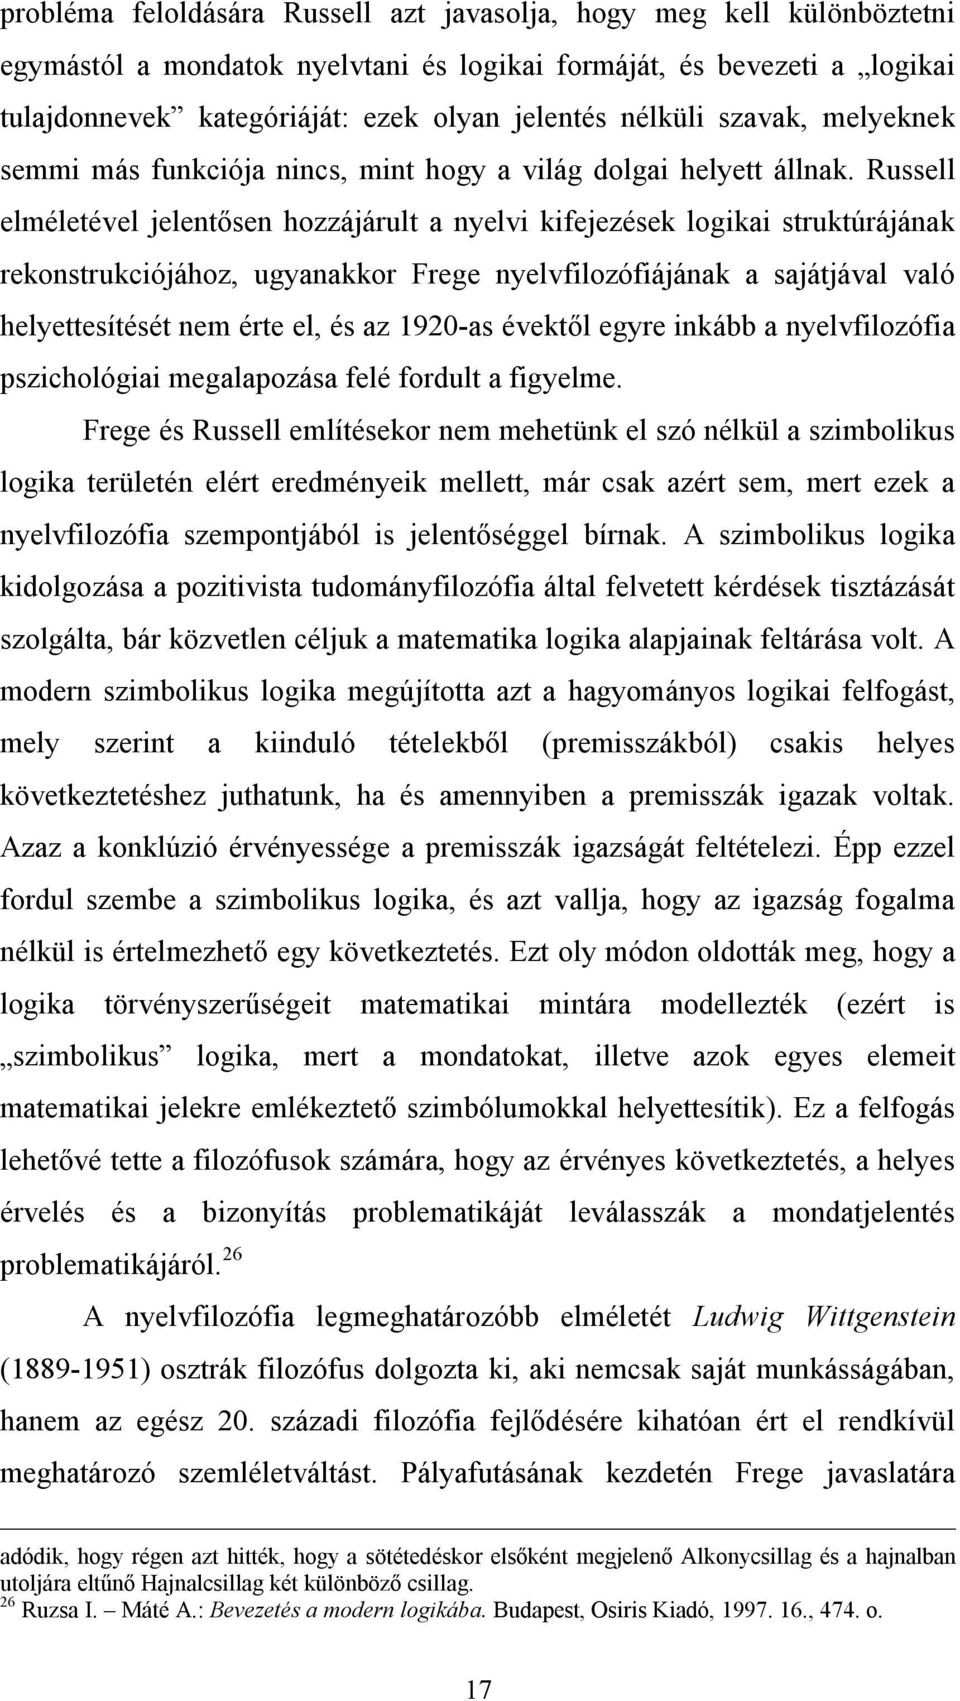 Russell elméletével jelentősen hozzájárult a nyelvi kifejezések logikai struktúrájának rekonstrukciójához, ugyanakkor Frege nyelvfilozófiájának a sajátjával való helyettesítését nem érte el, és az